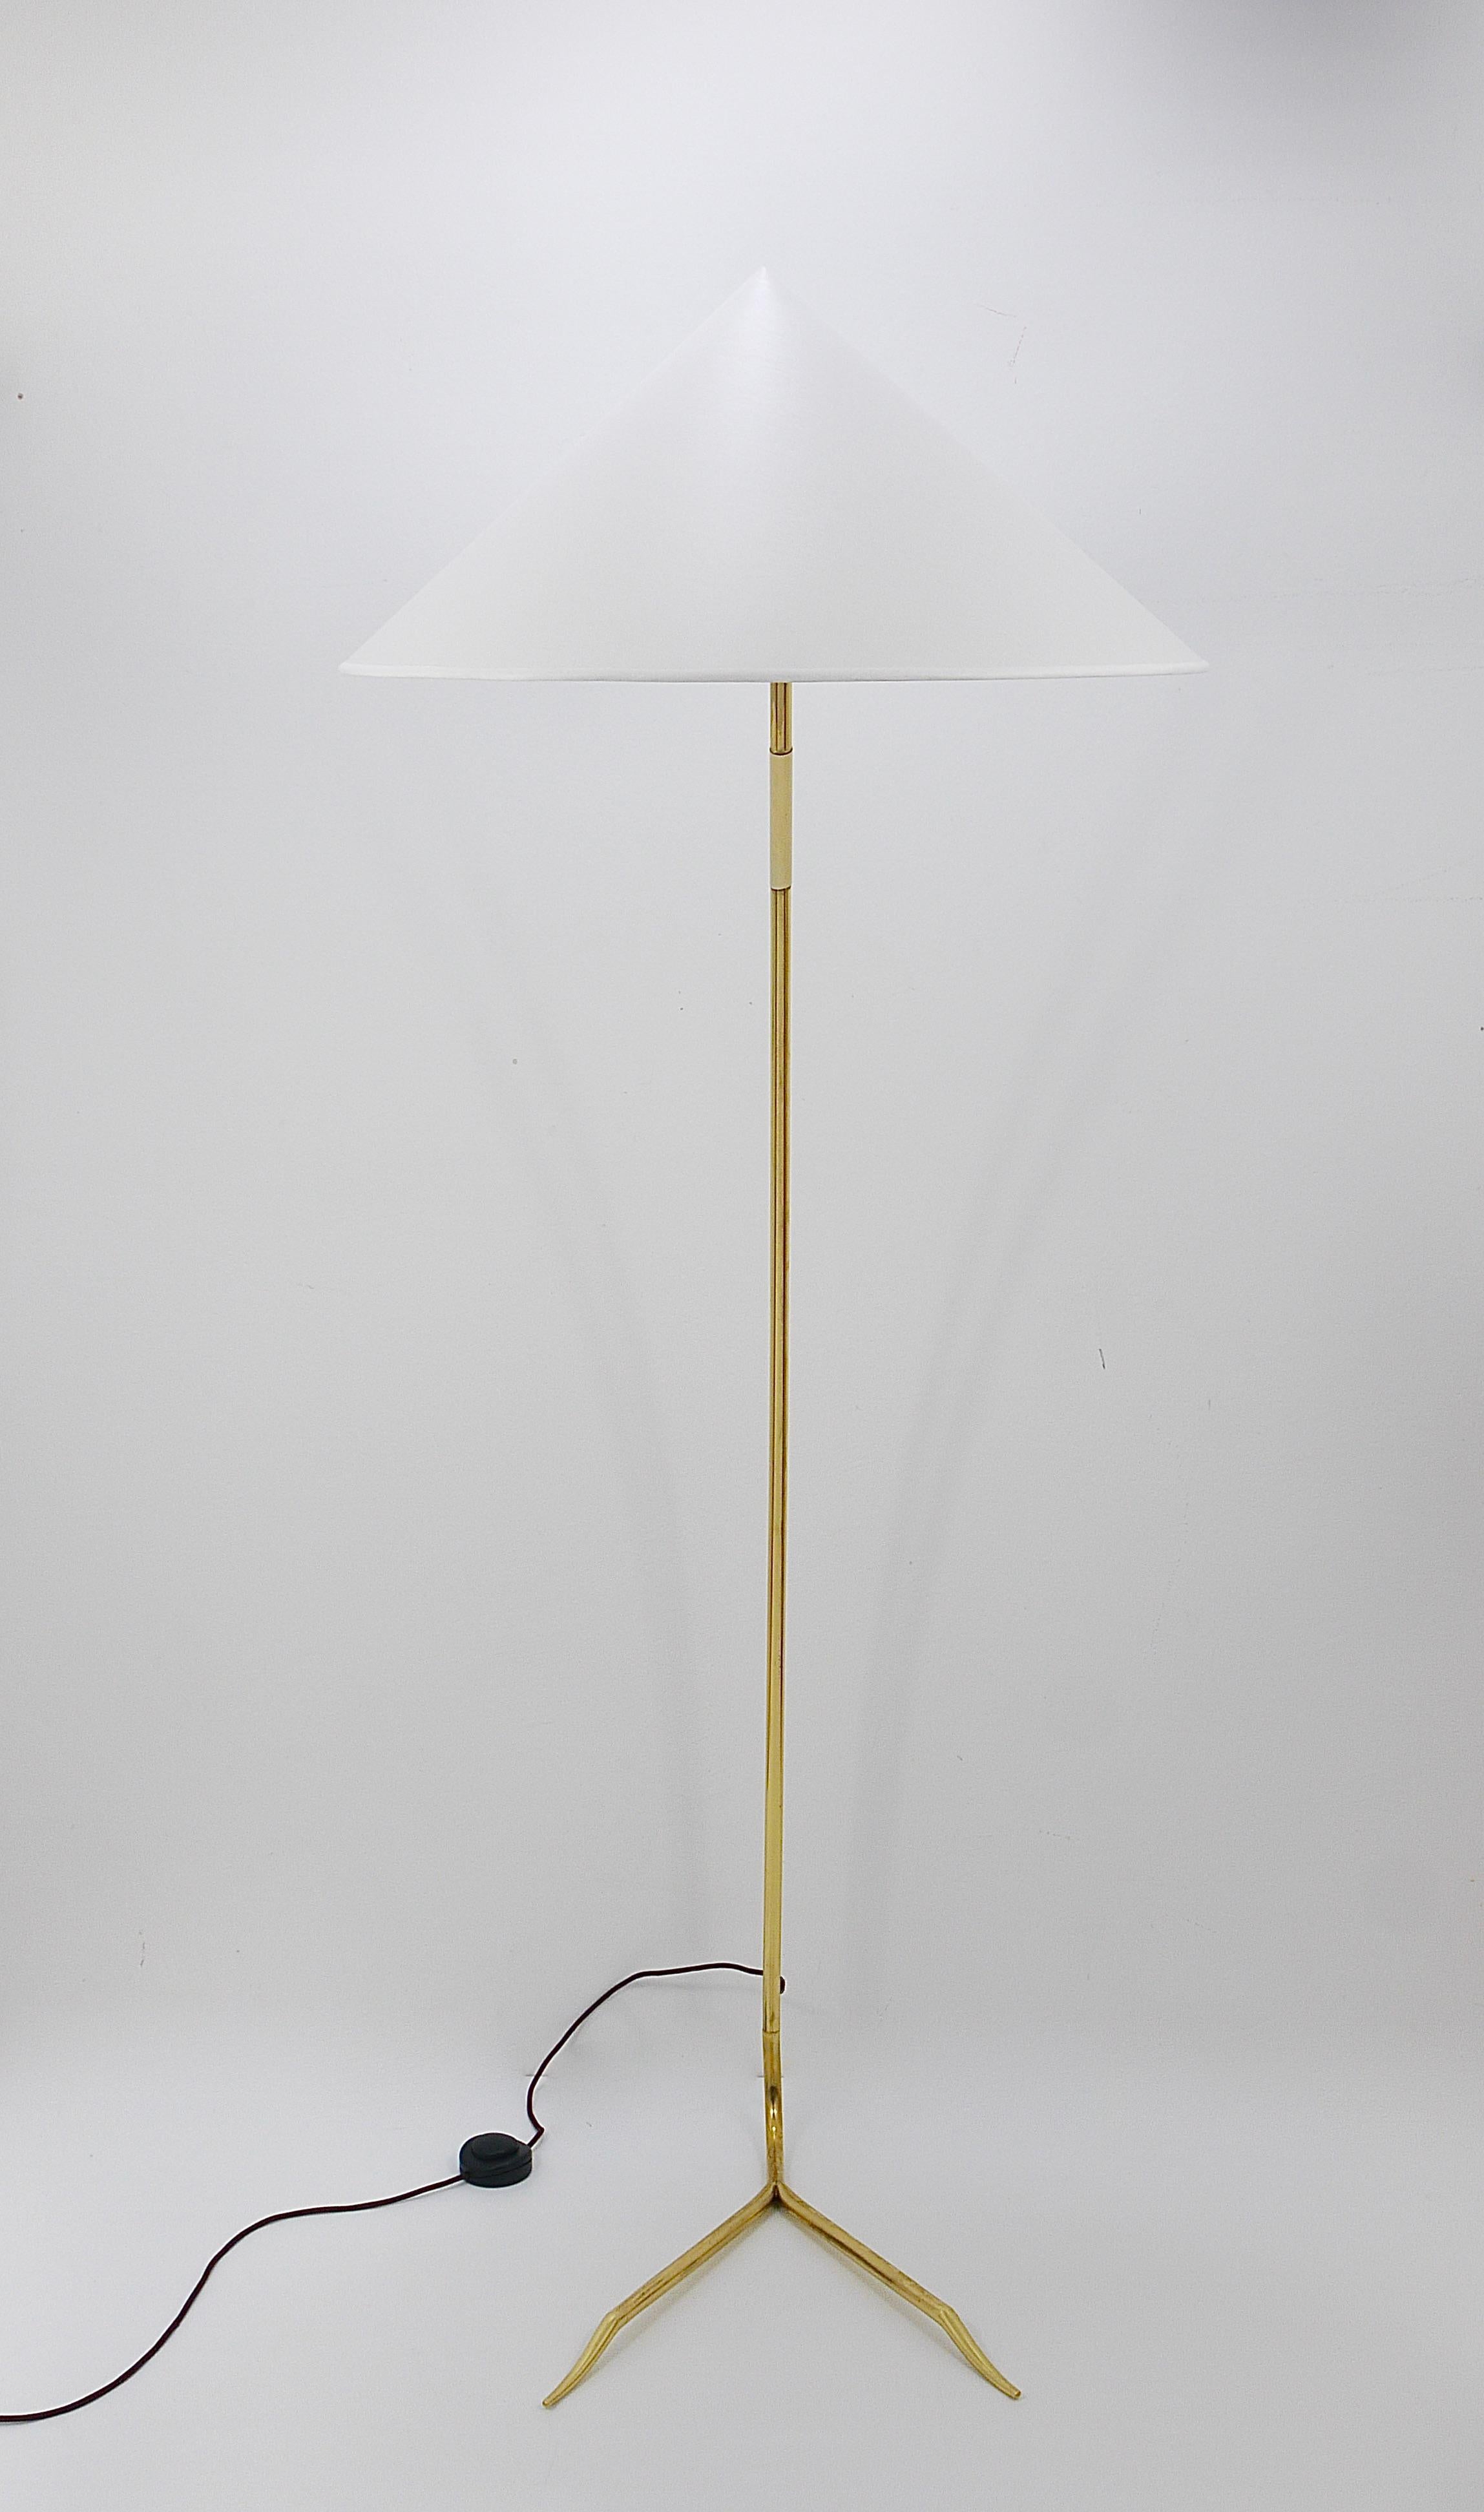 Austrian Rupert Nikoll Sumatra Mid-Century Brass Floor Lamp, Vienna, Austria, 1950s For Sale